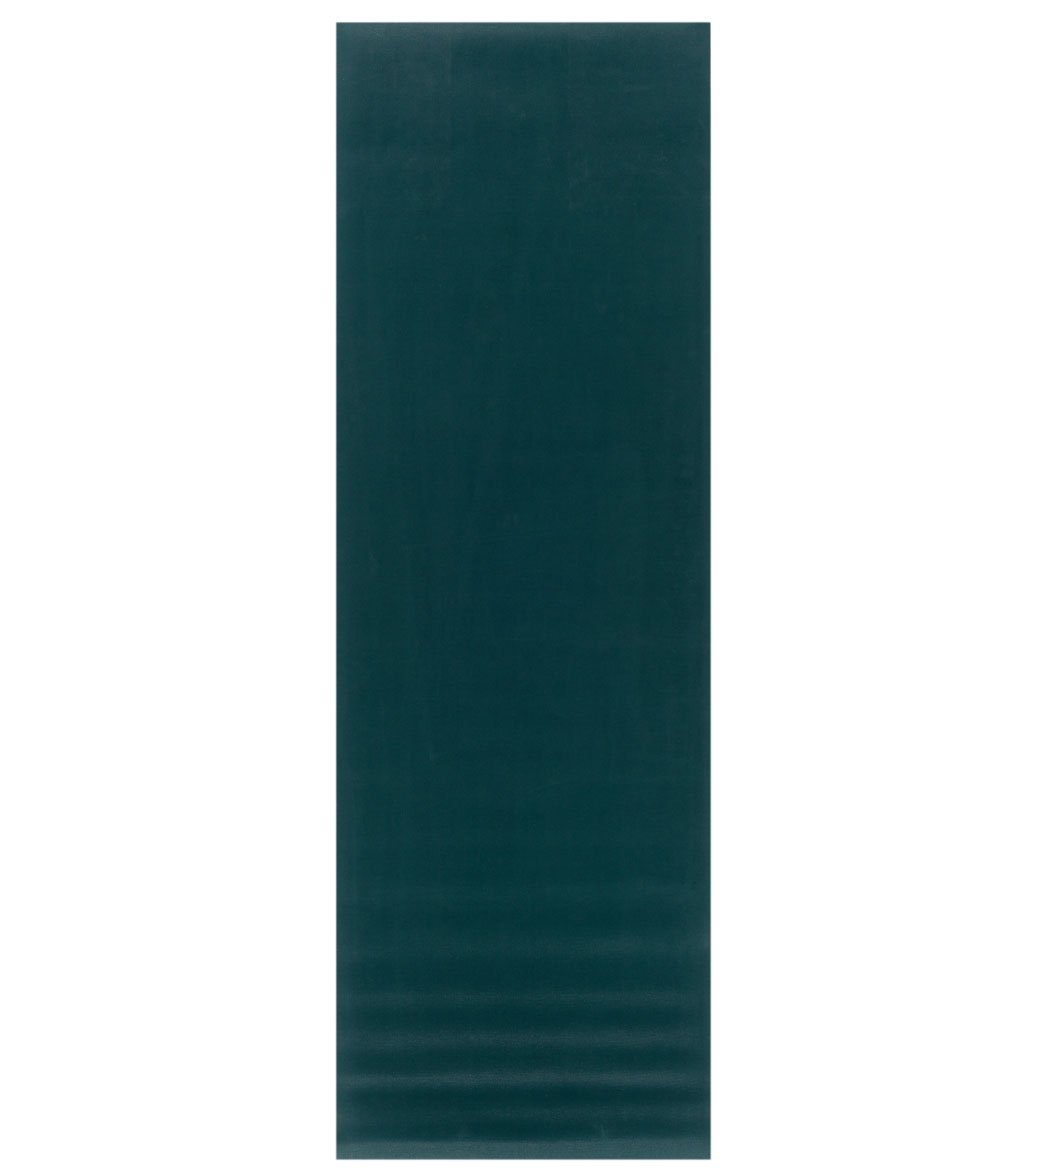 Jade Yoga Elite S Natural Rubber Yoga Mat 71 5mm at